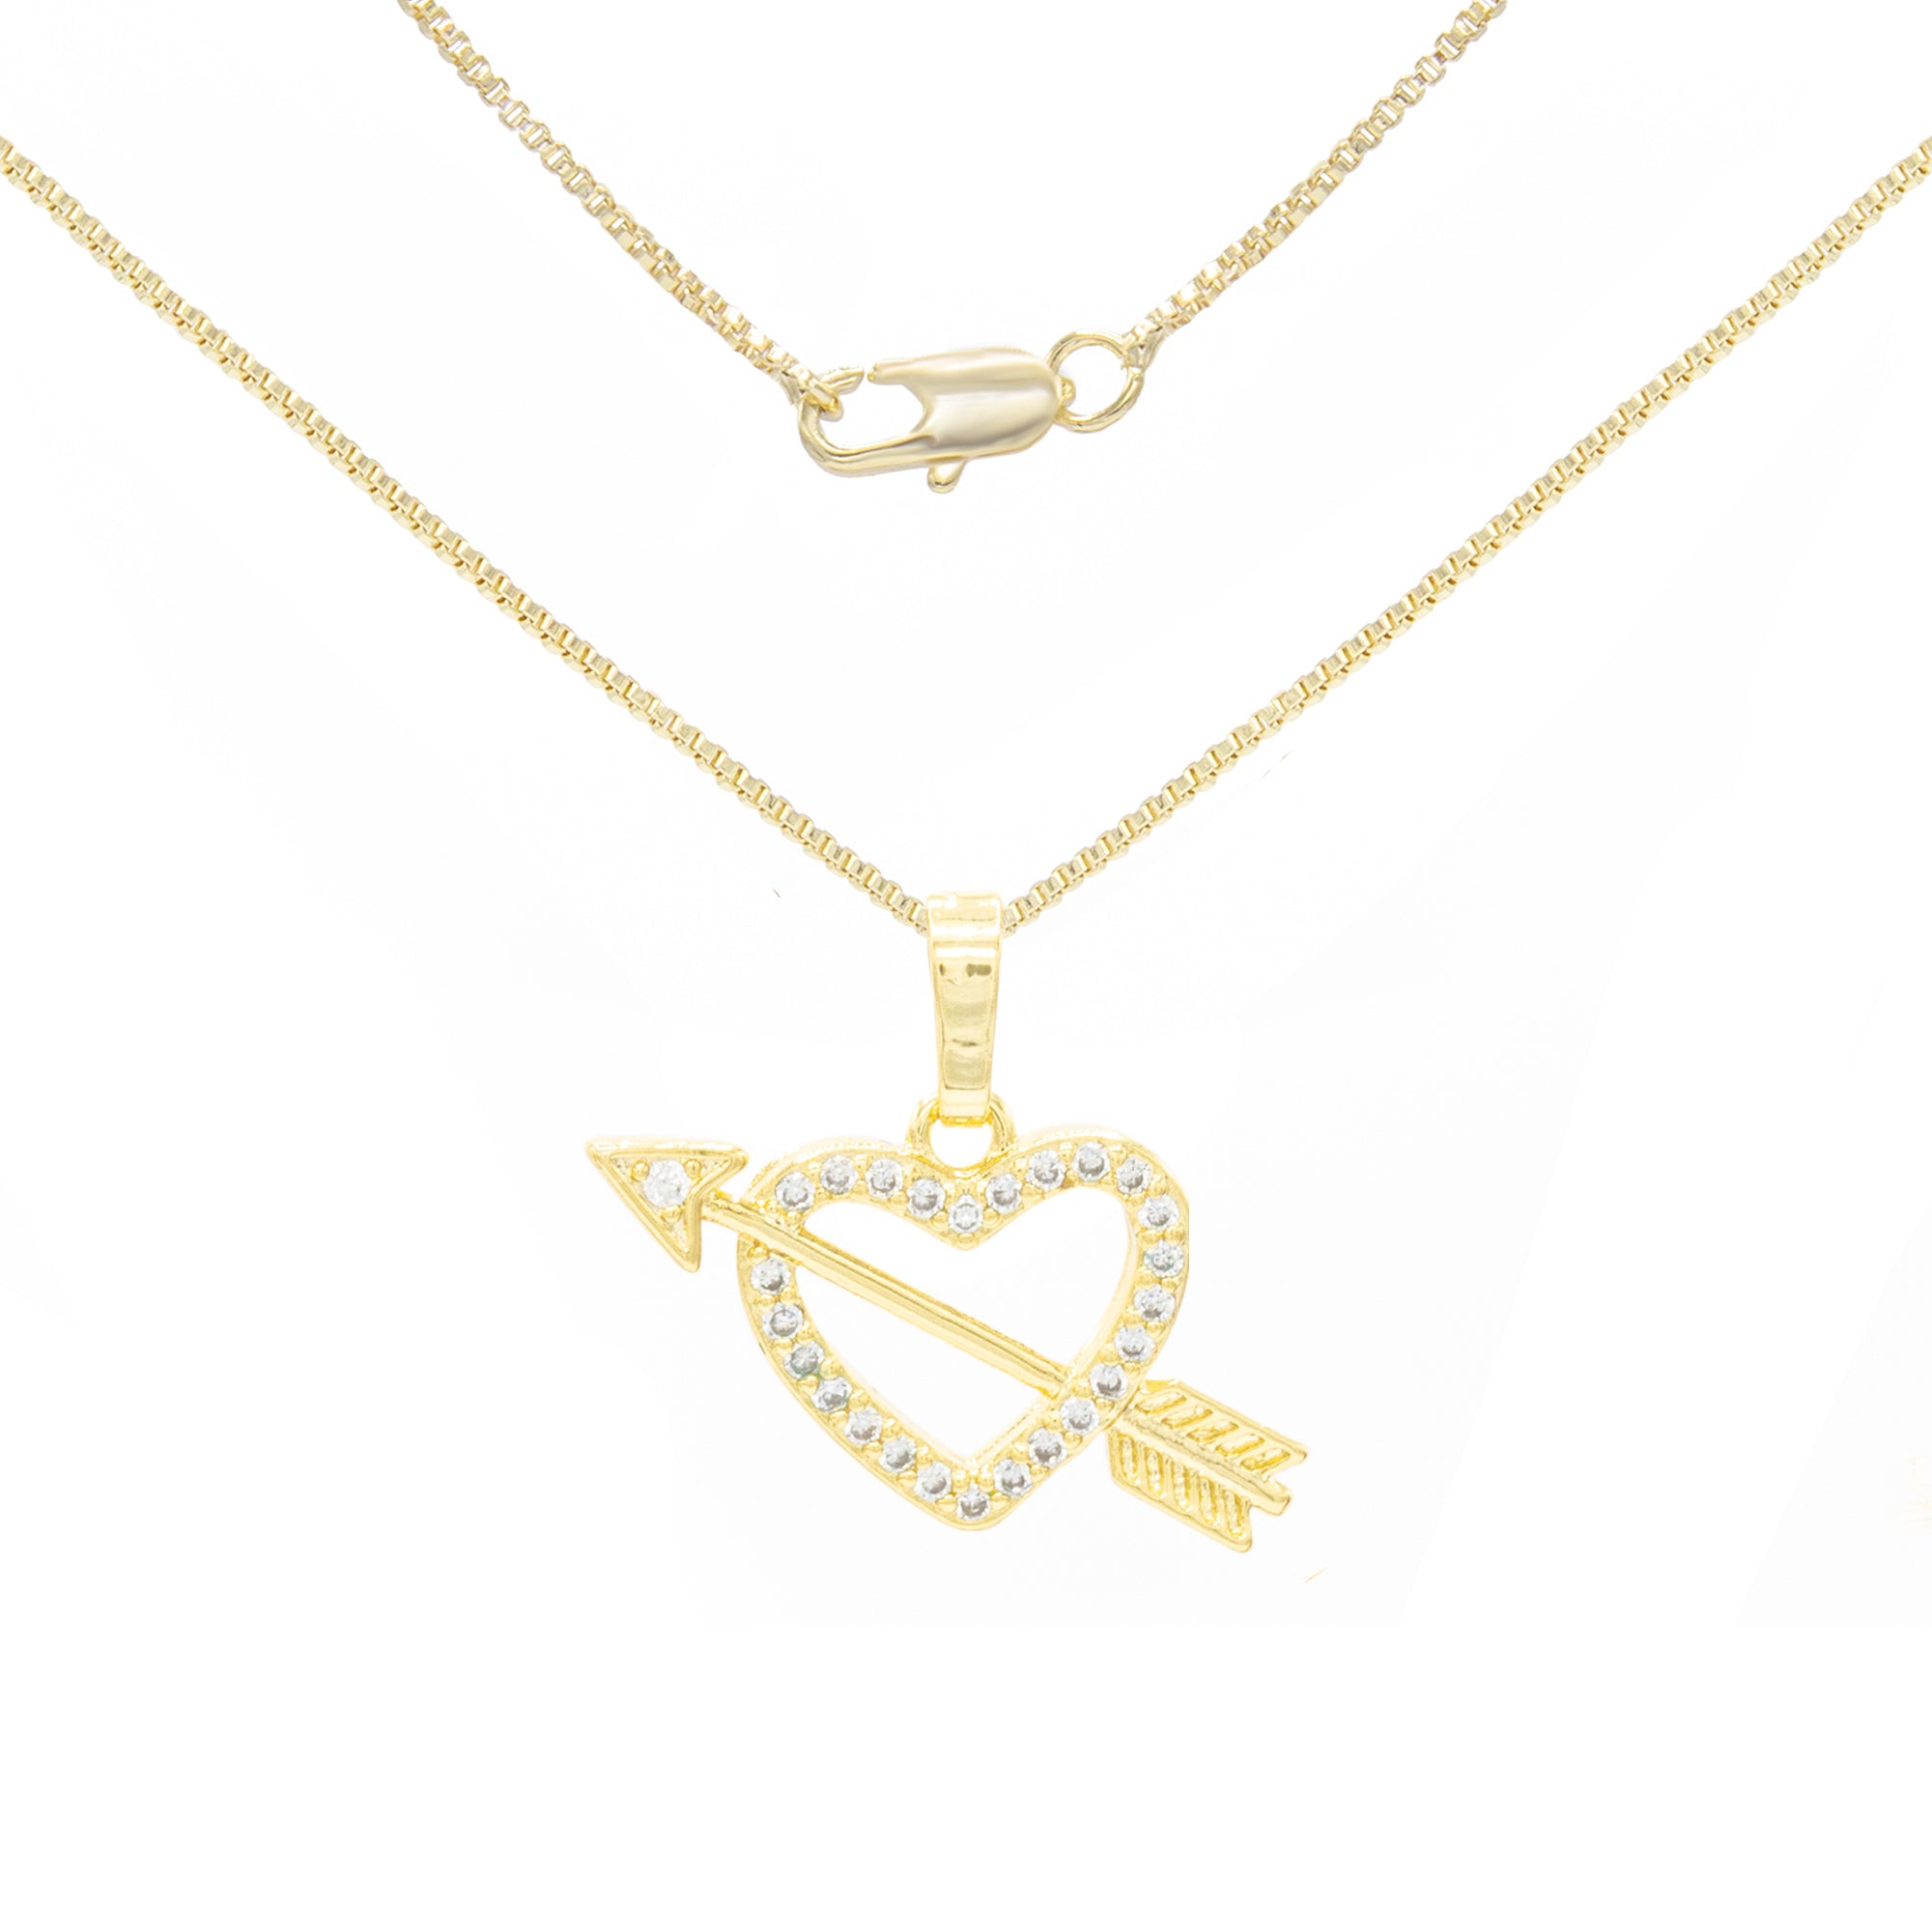 Heart Pendant Necklace Set